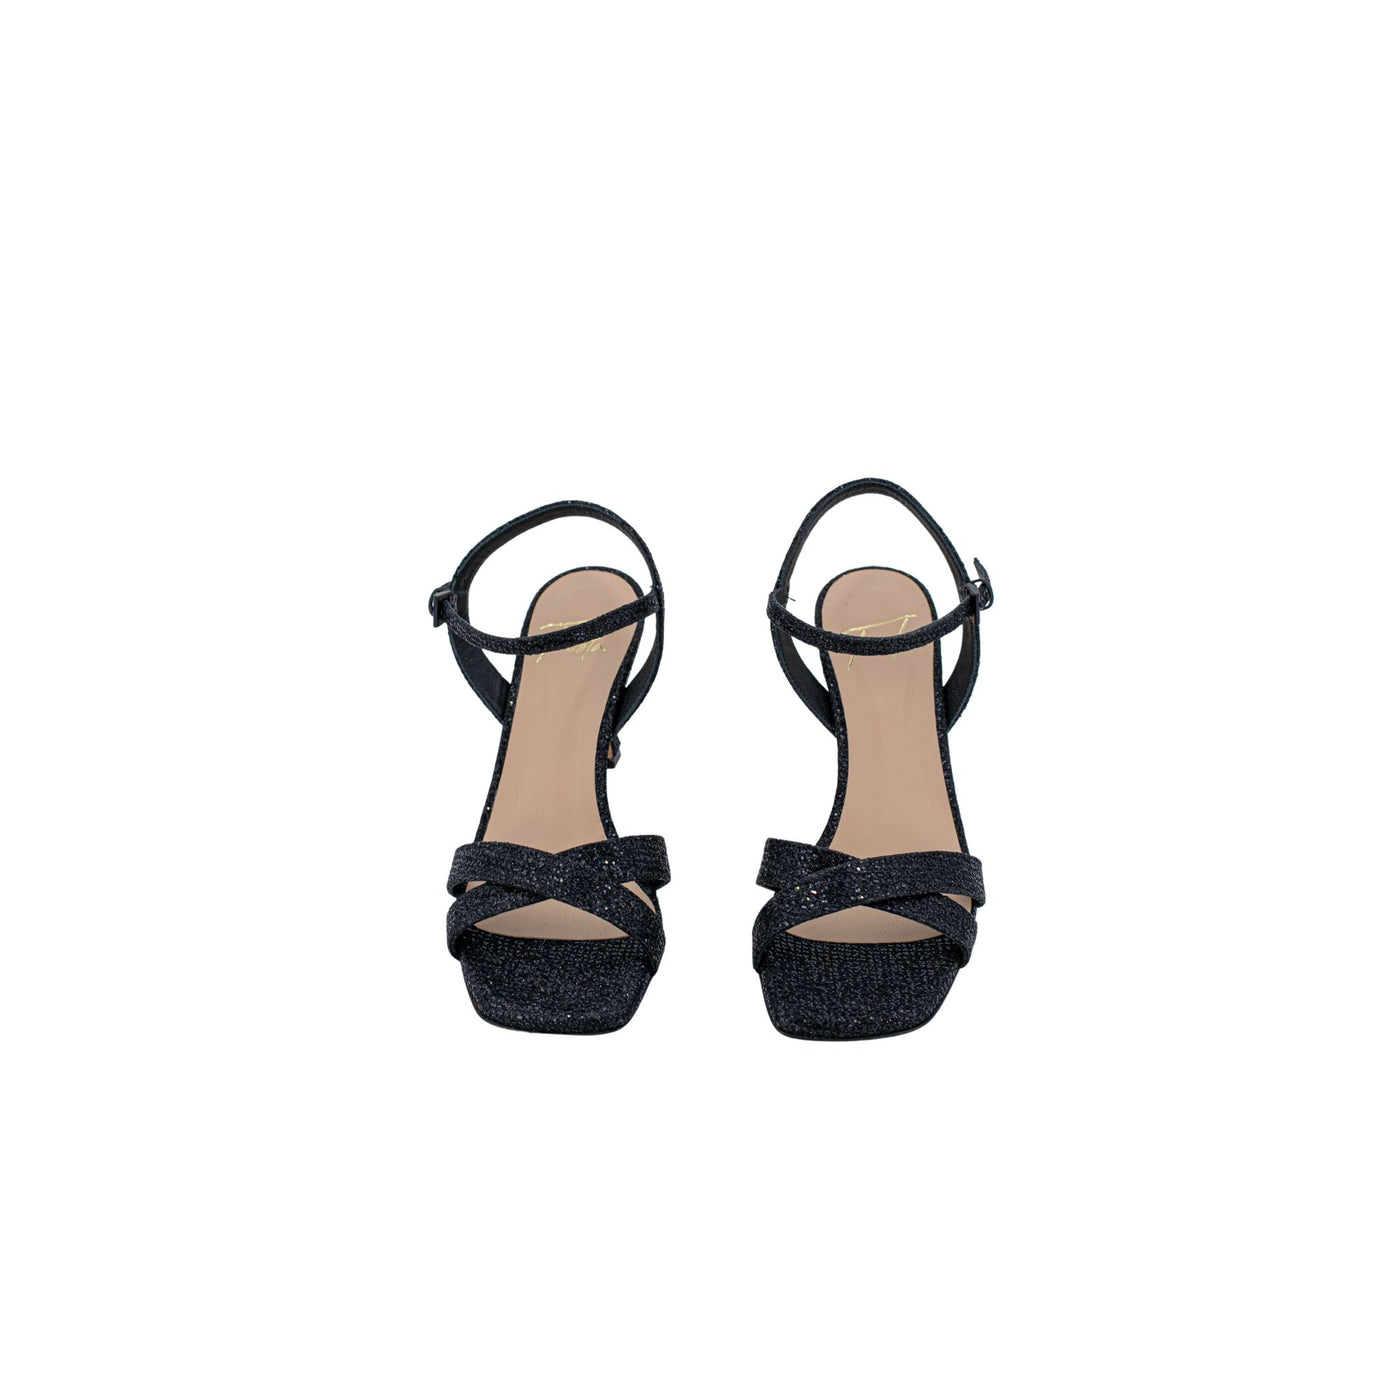 Women's glitter sandals with heel